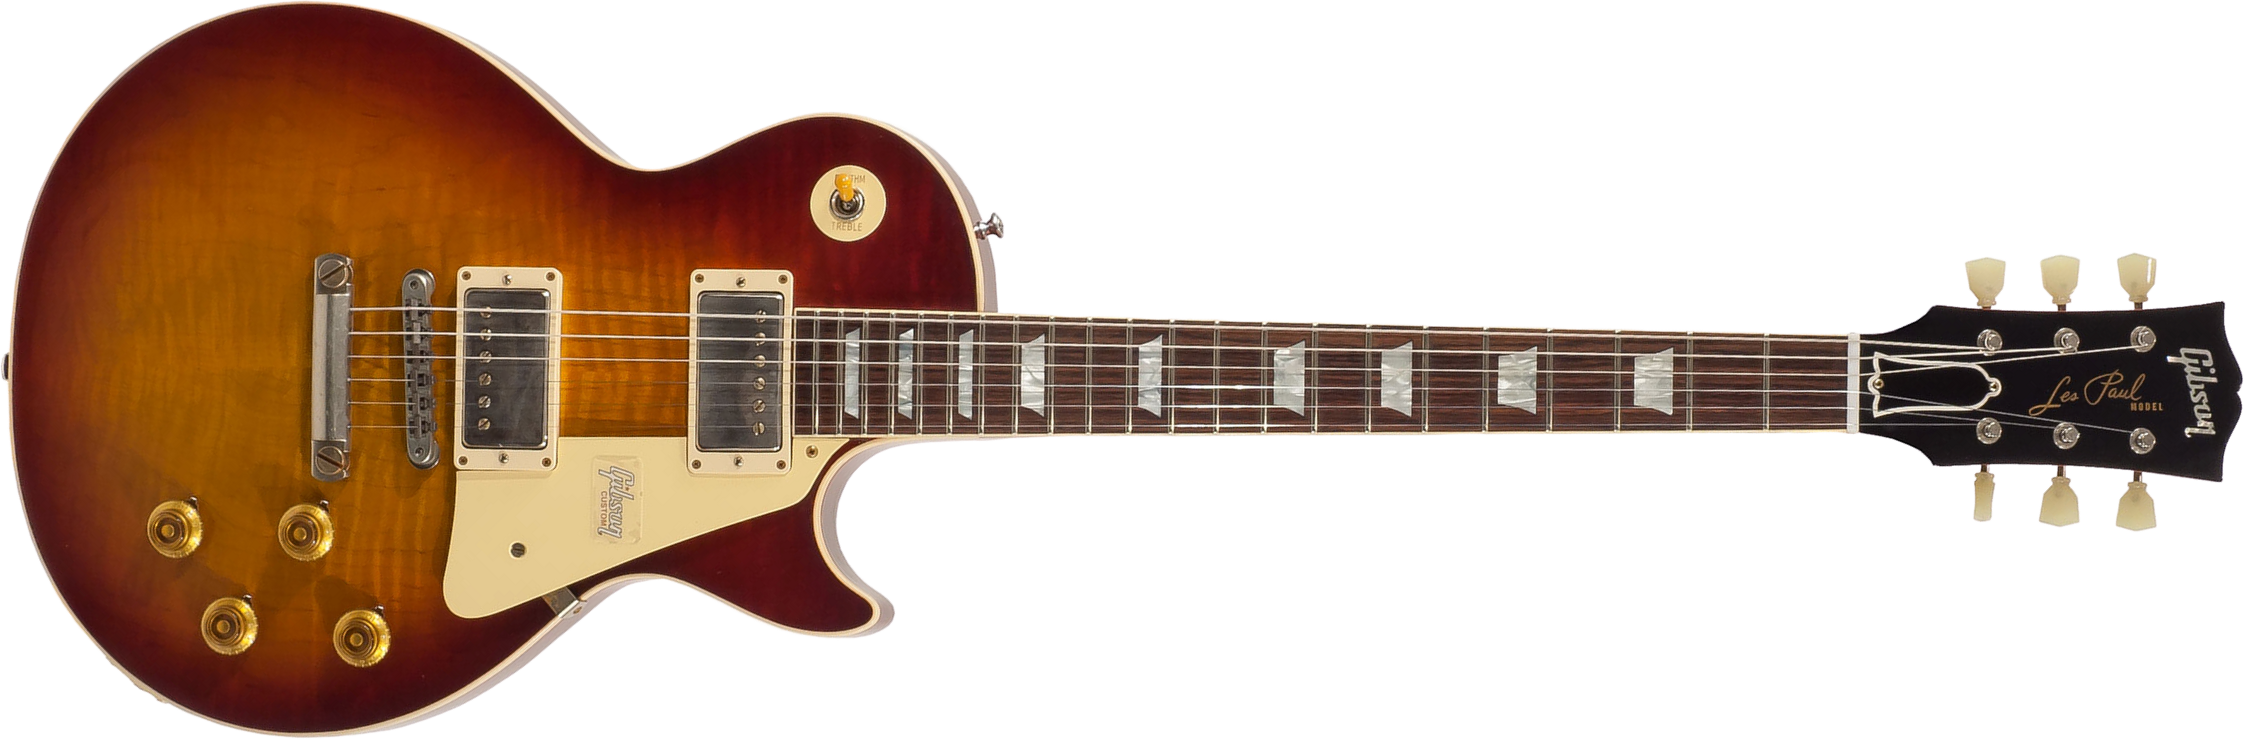 Gibson Custom Shop Les Paul Standard 1959 2h Ht Rw - Vos Vintage Cherry Sunburst - Guitare Électrique Single Cut - Main picture